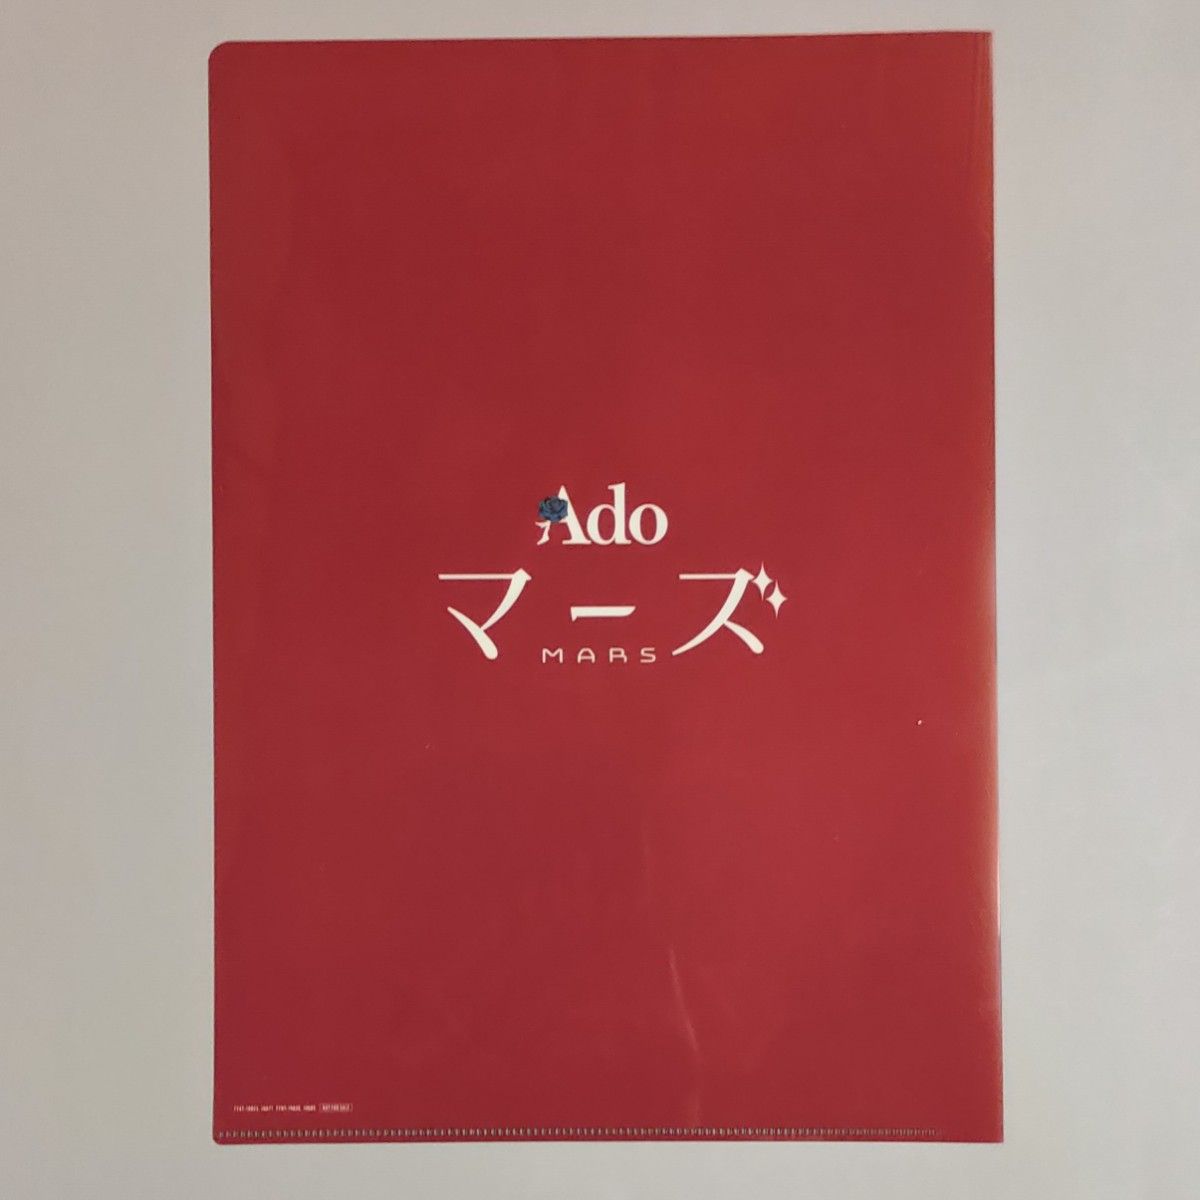 Ado 「マーズ 【初回限定盤】(Blu-ray+α) 」(特典:クリアファイル付き)